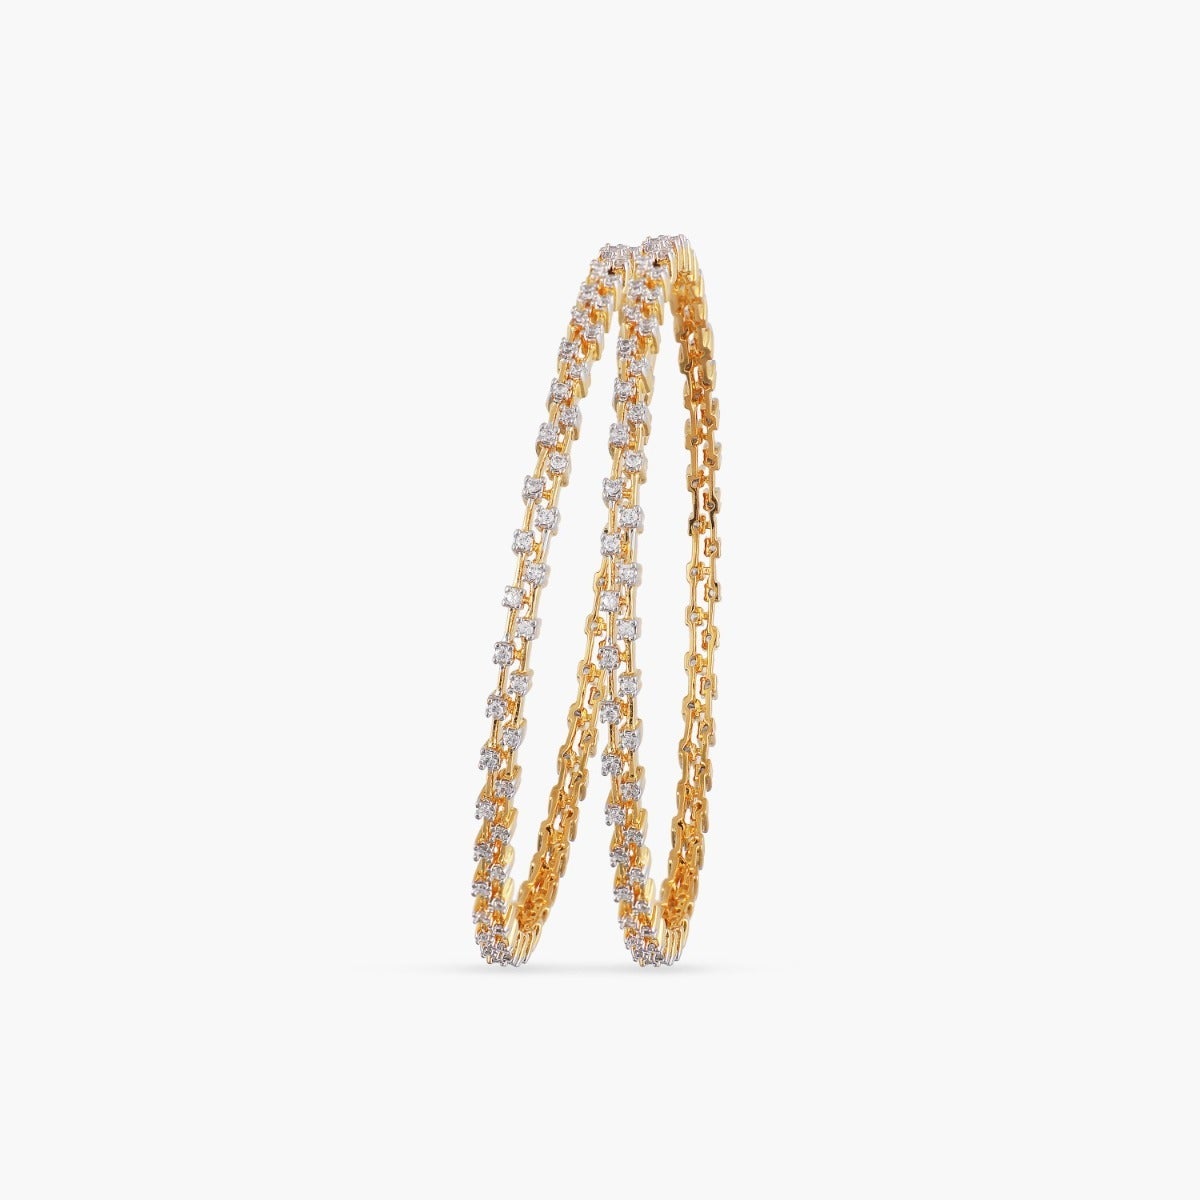 Buy Exquisite Diamond Bracelet in 14KT Yellow Gold Online | ORRA